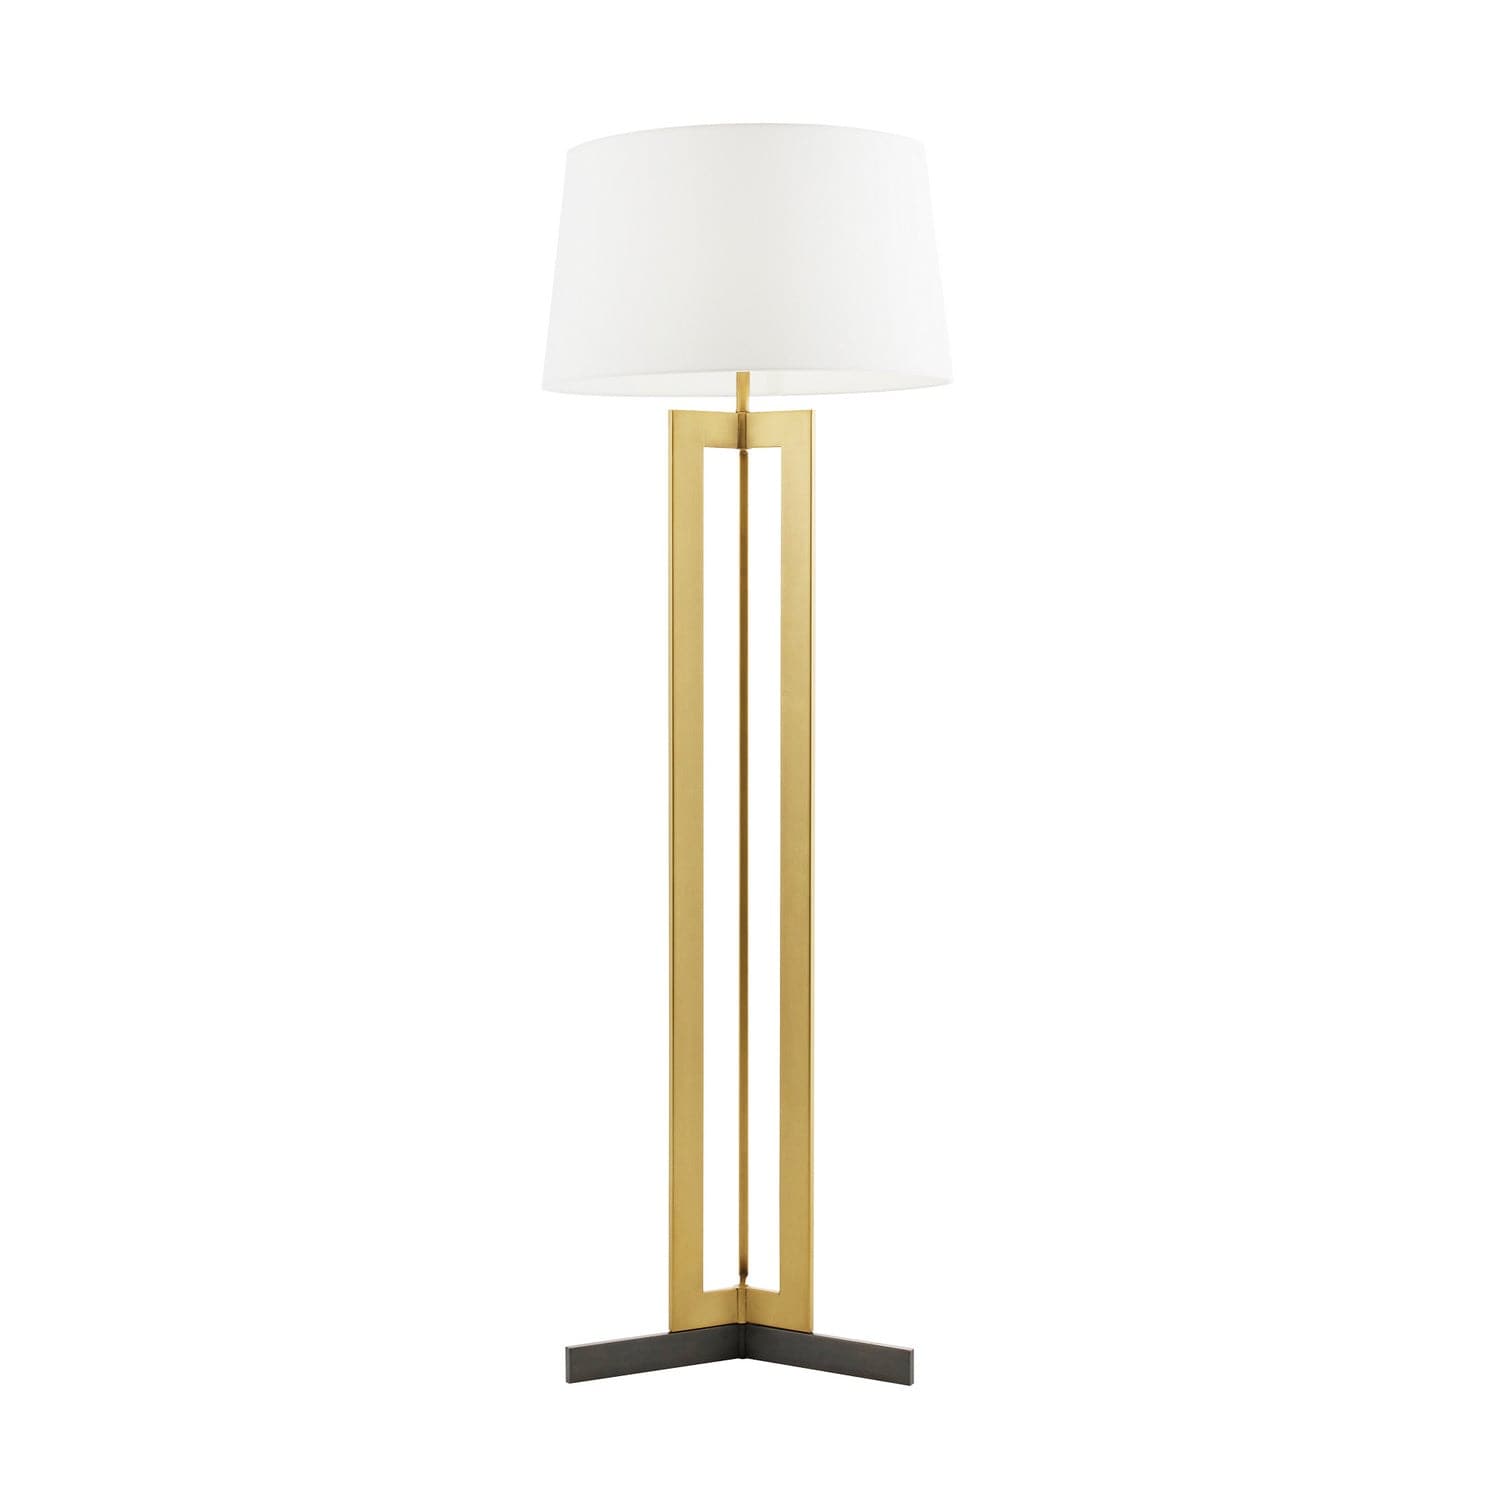 Arteriors - 79830-518 - One Light Floor Lamp - Newman - Antique Brass